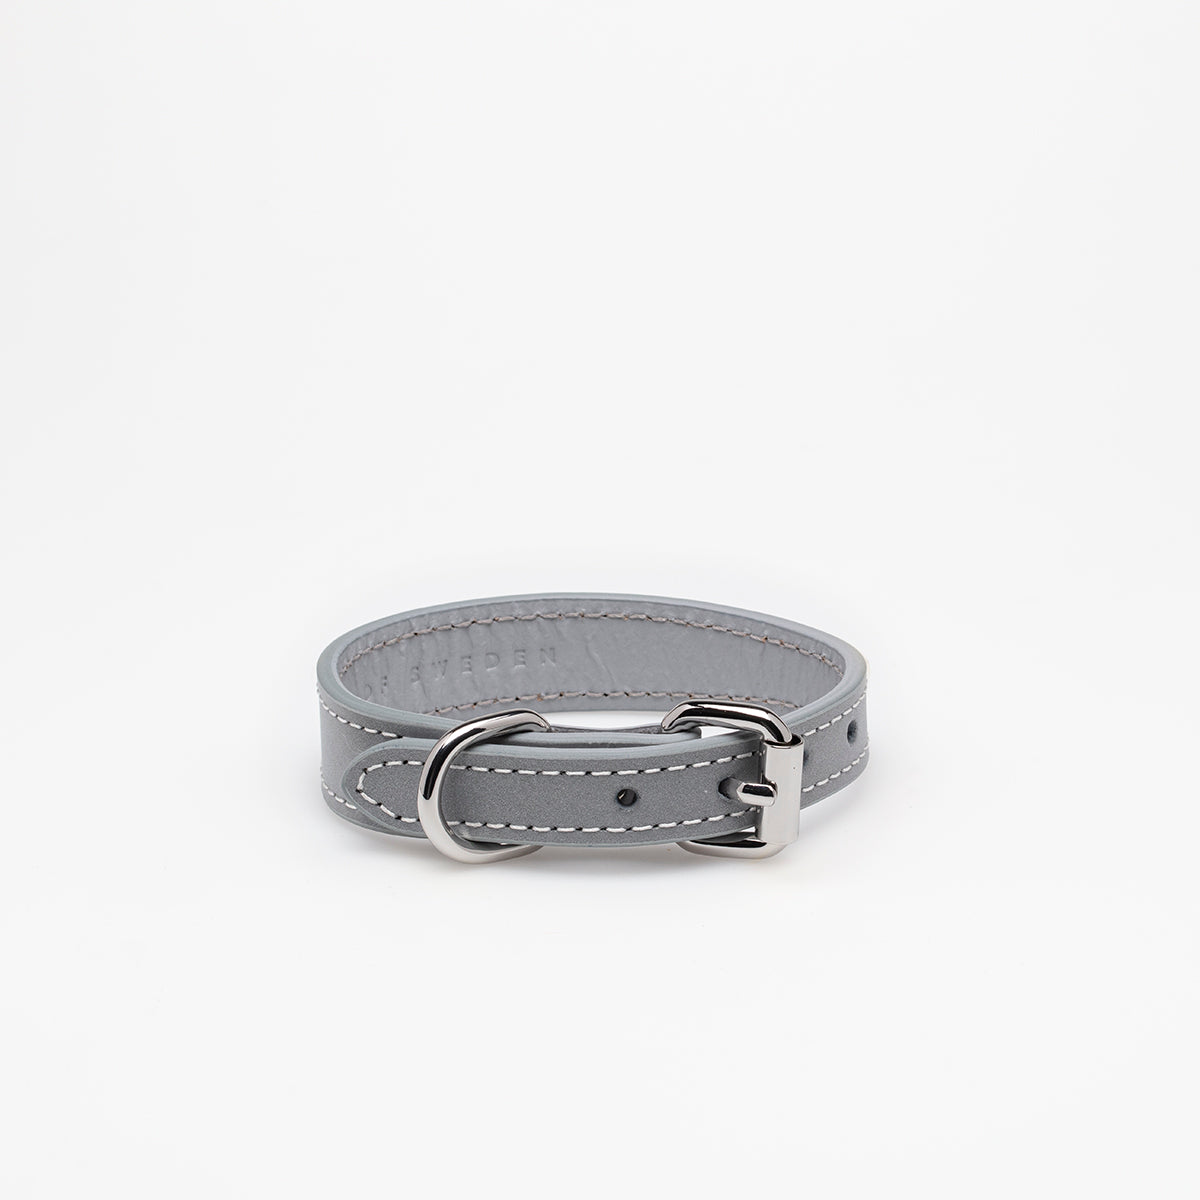 Hundehalsbånd i grå med sølv detaljer som lyser op i mørket. Hundehalsbåndet er lavet i vegansk læder.